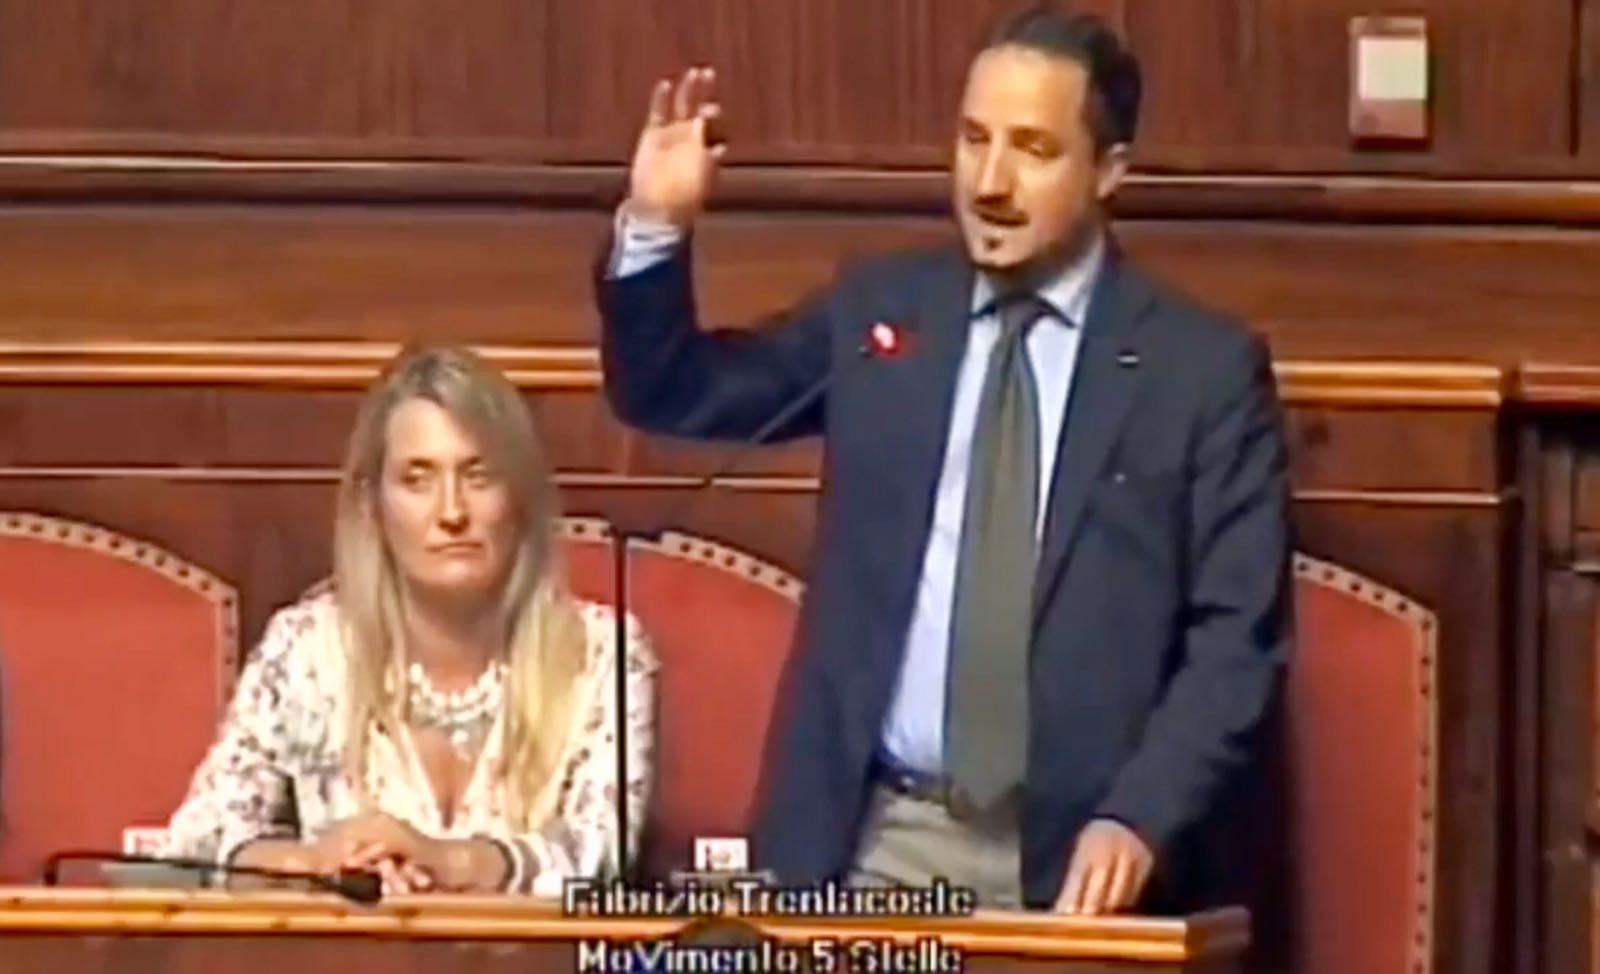 Trentacoste (M5S) denuncia la gestione dei Consorzi di bonifica siciliani dall’Aula del Senato